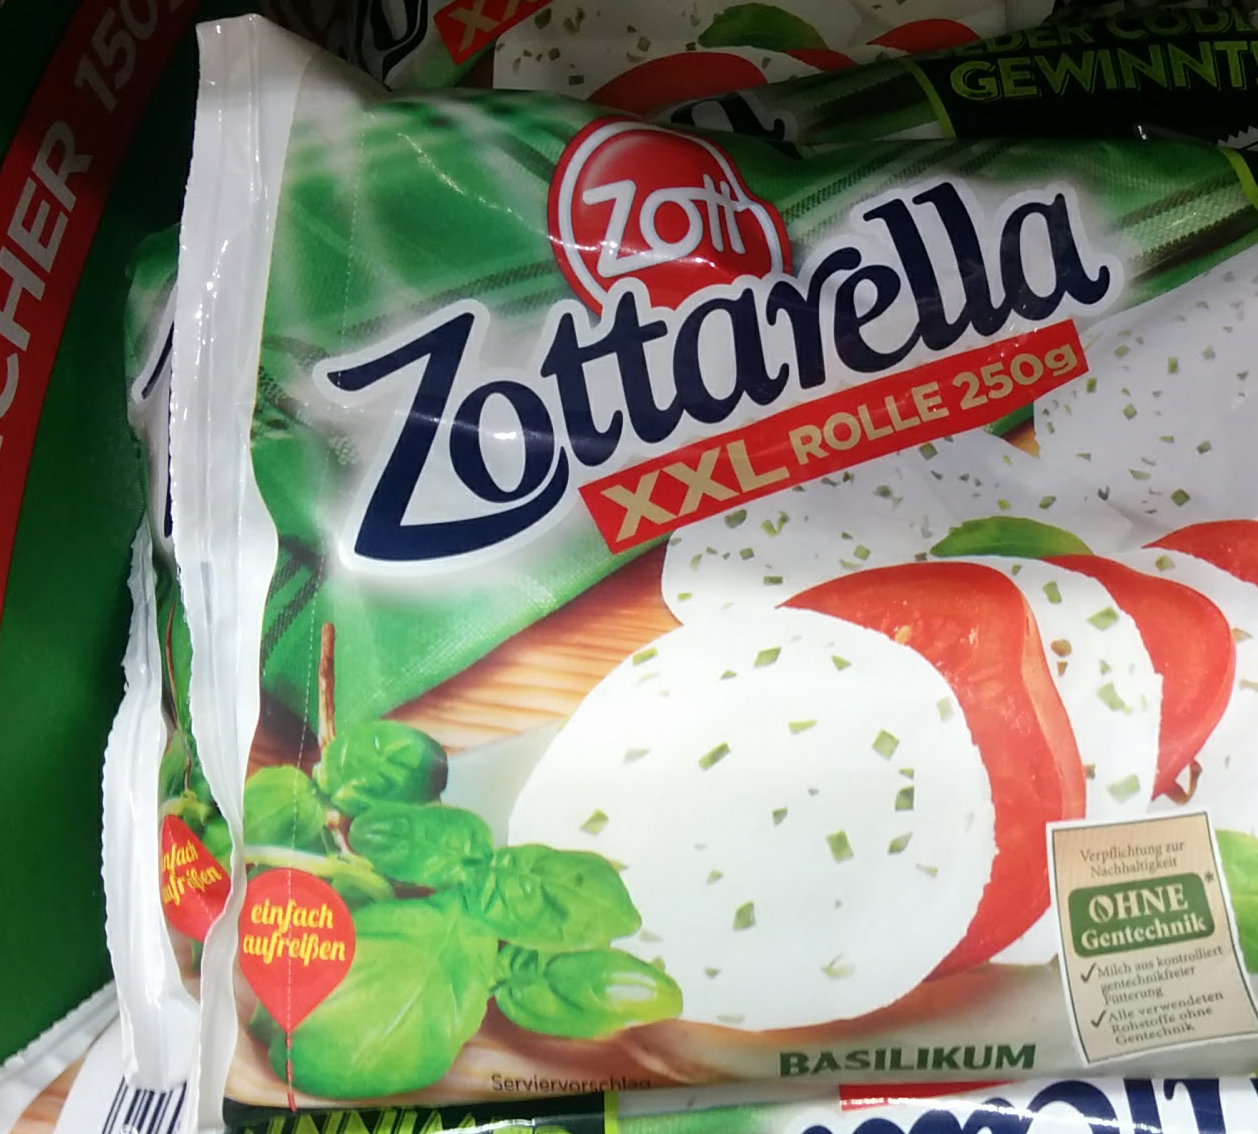 Zottarella: Pizzaofen gewinnen - Code eingeben